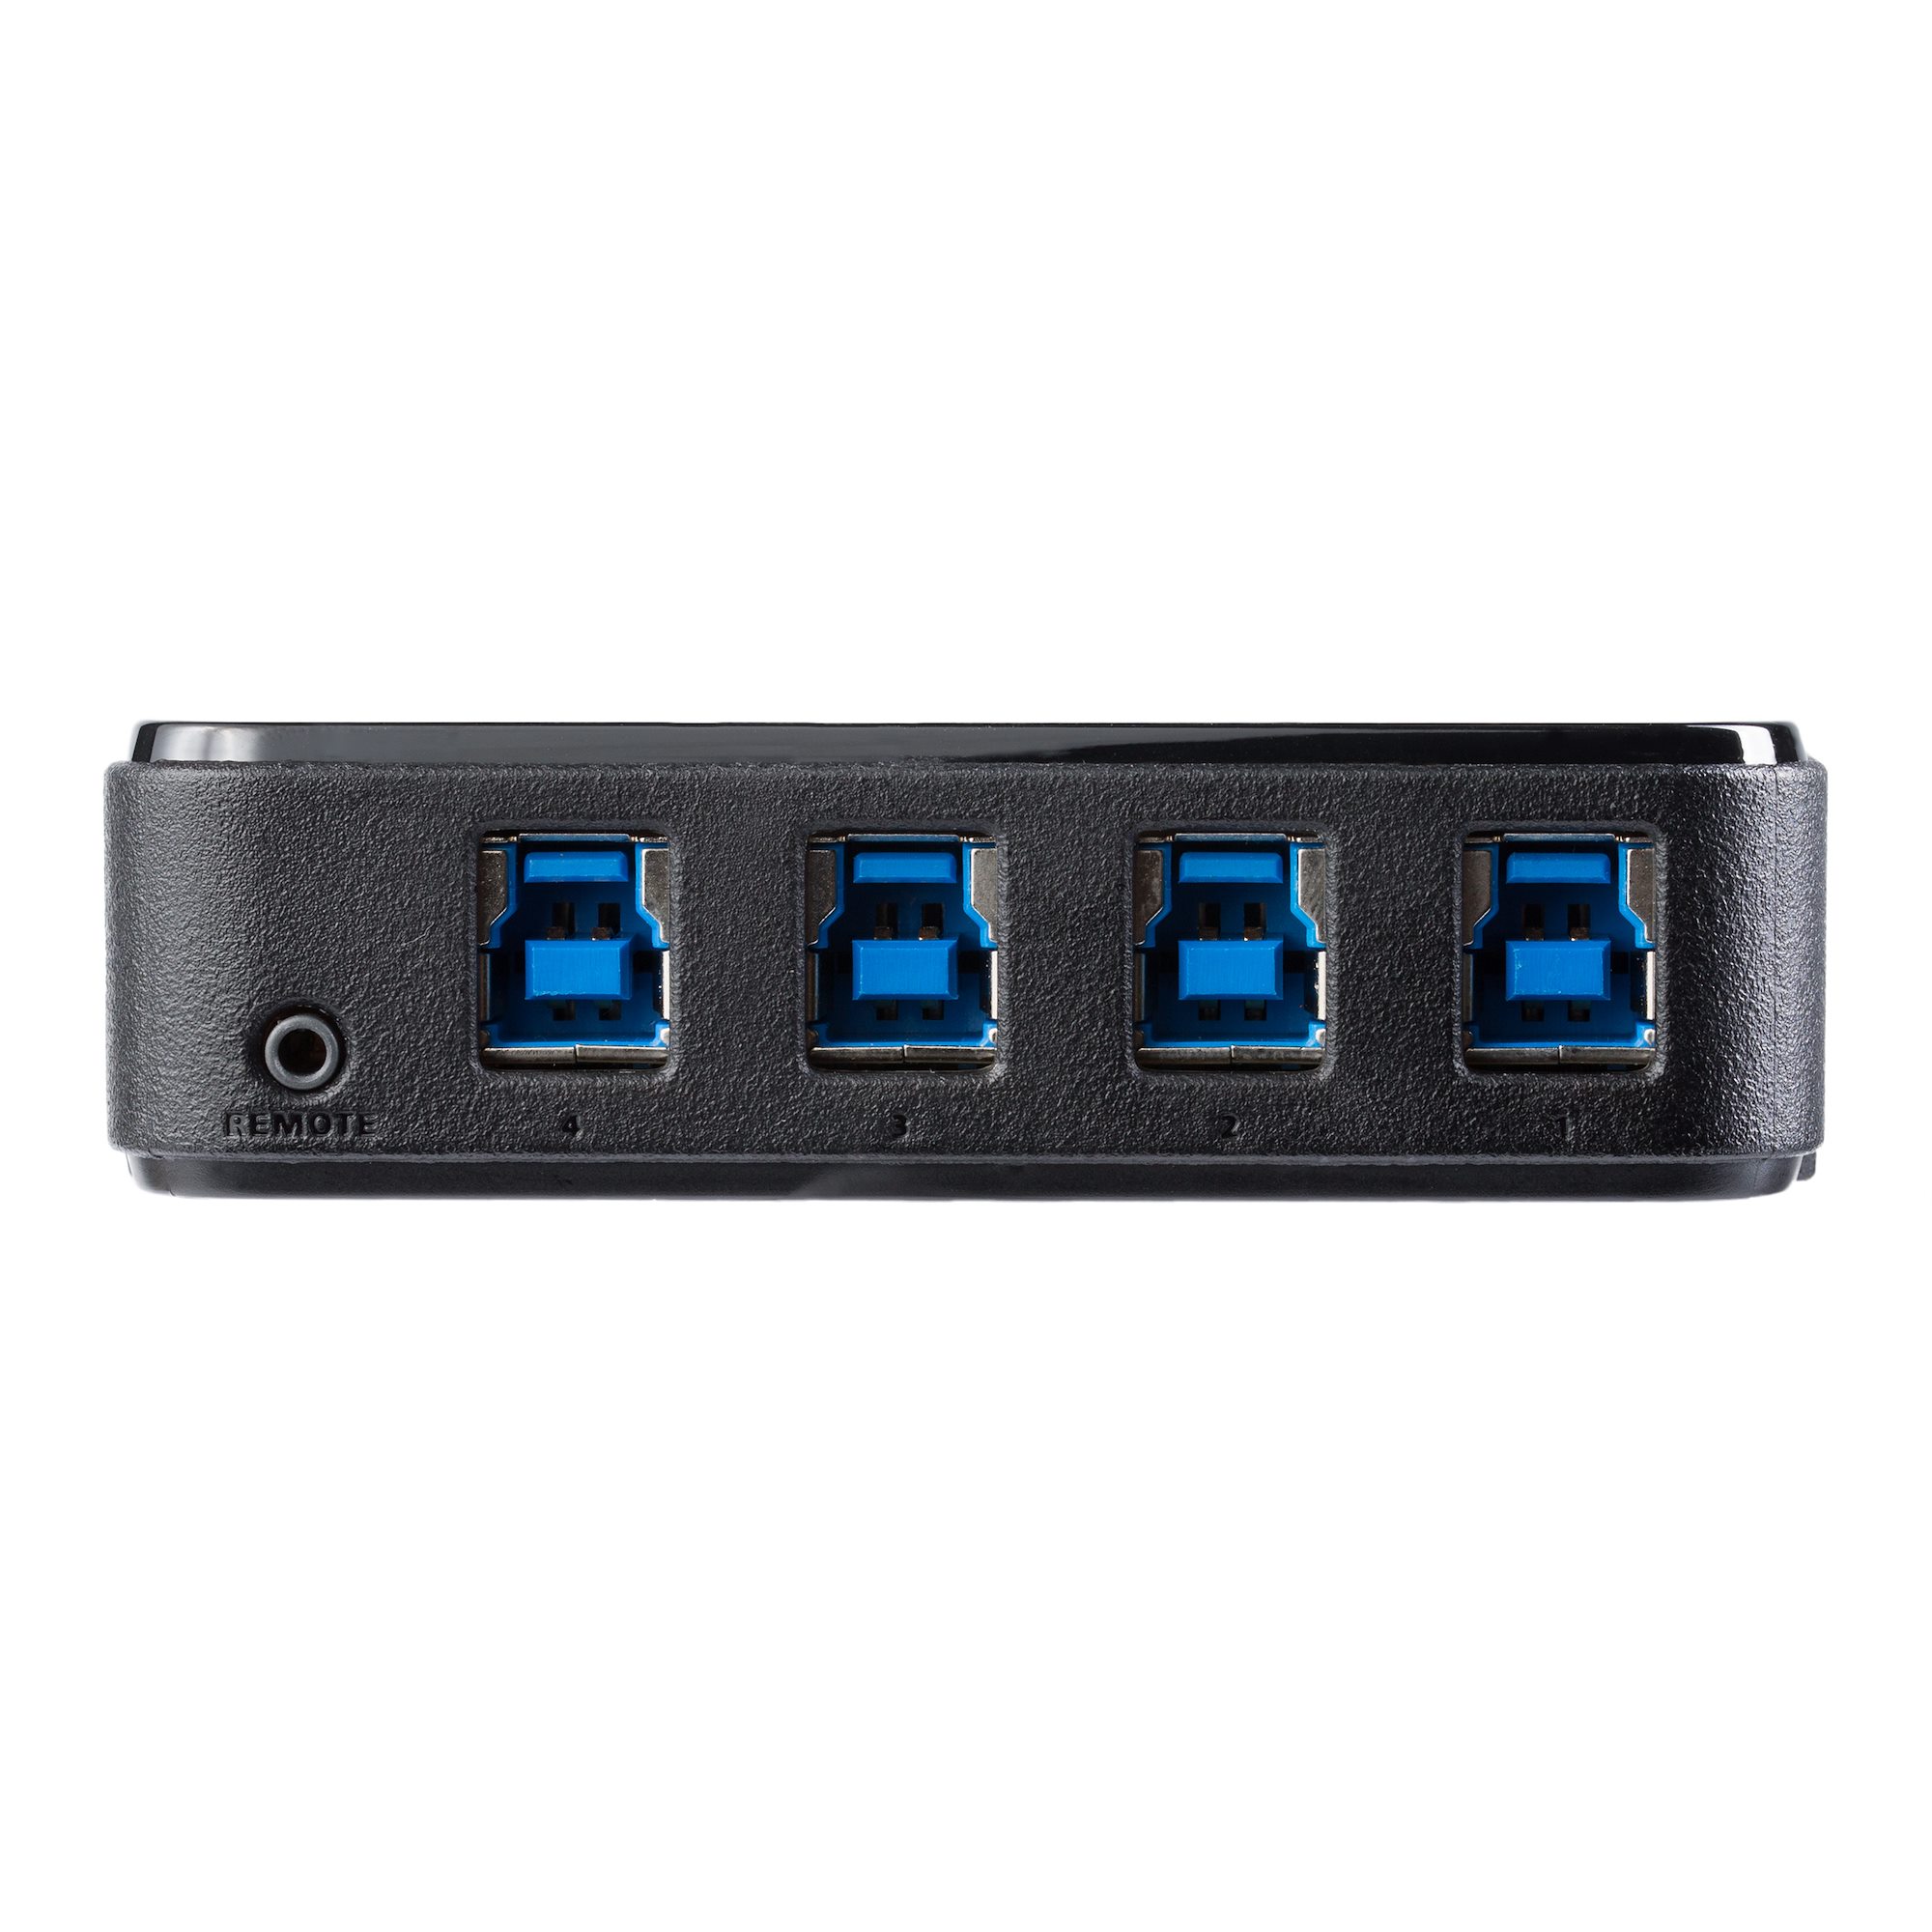 Switch - 4X4 USB 3.0 Peripheral Sharing - USB-A Hubs, USB Hubs